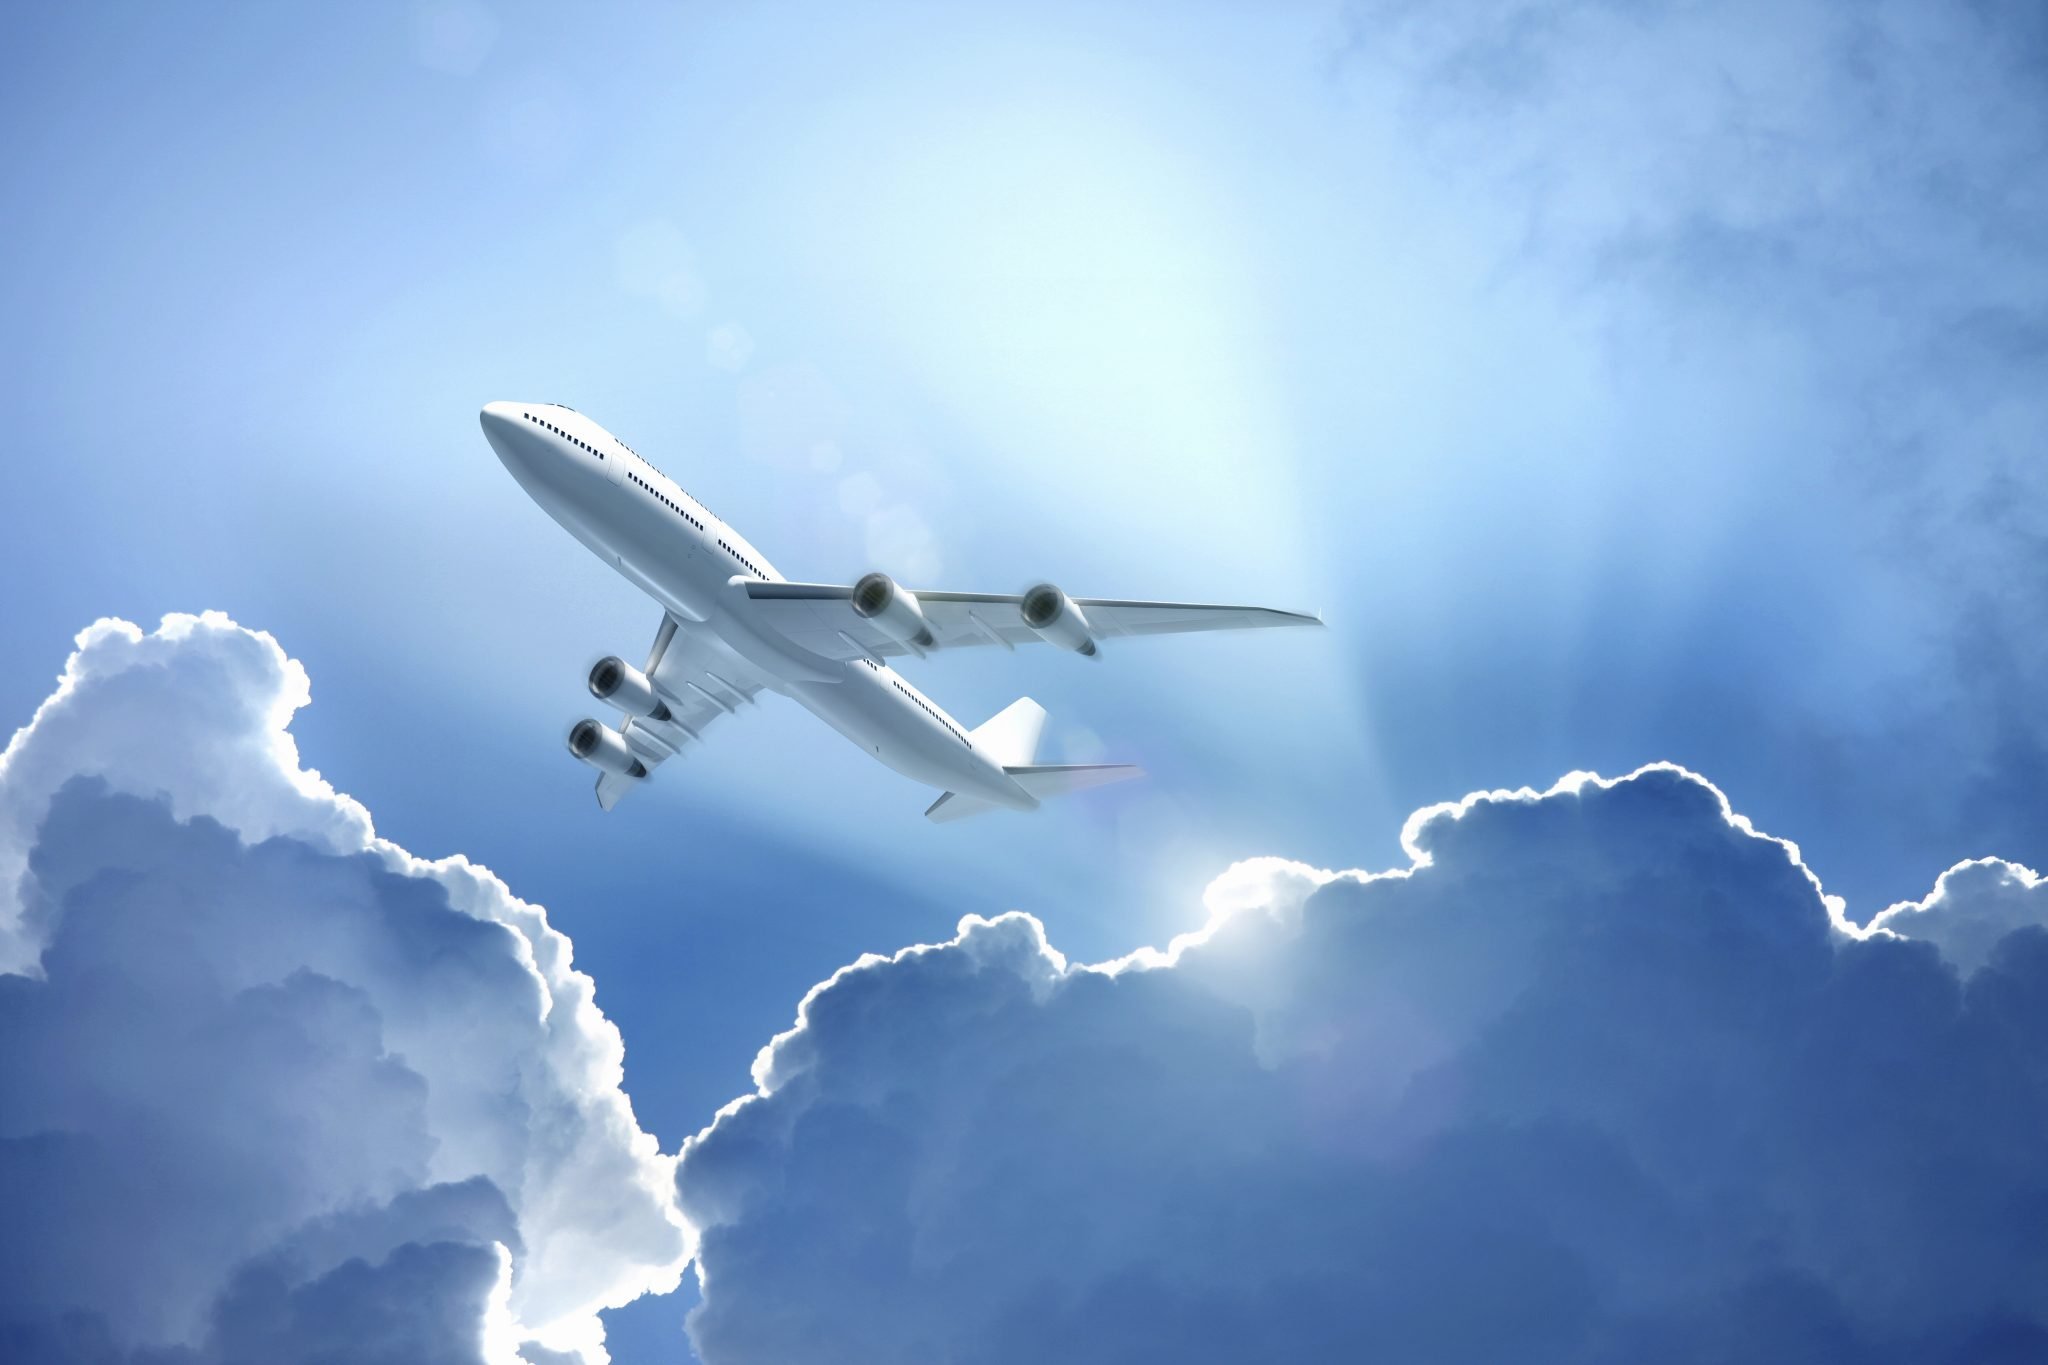 Стремительный полет самолета. Самолет в небе. Cfvjktn DF yt,t. Самолет в облаках. Самолет в голубом небе.